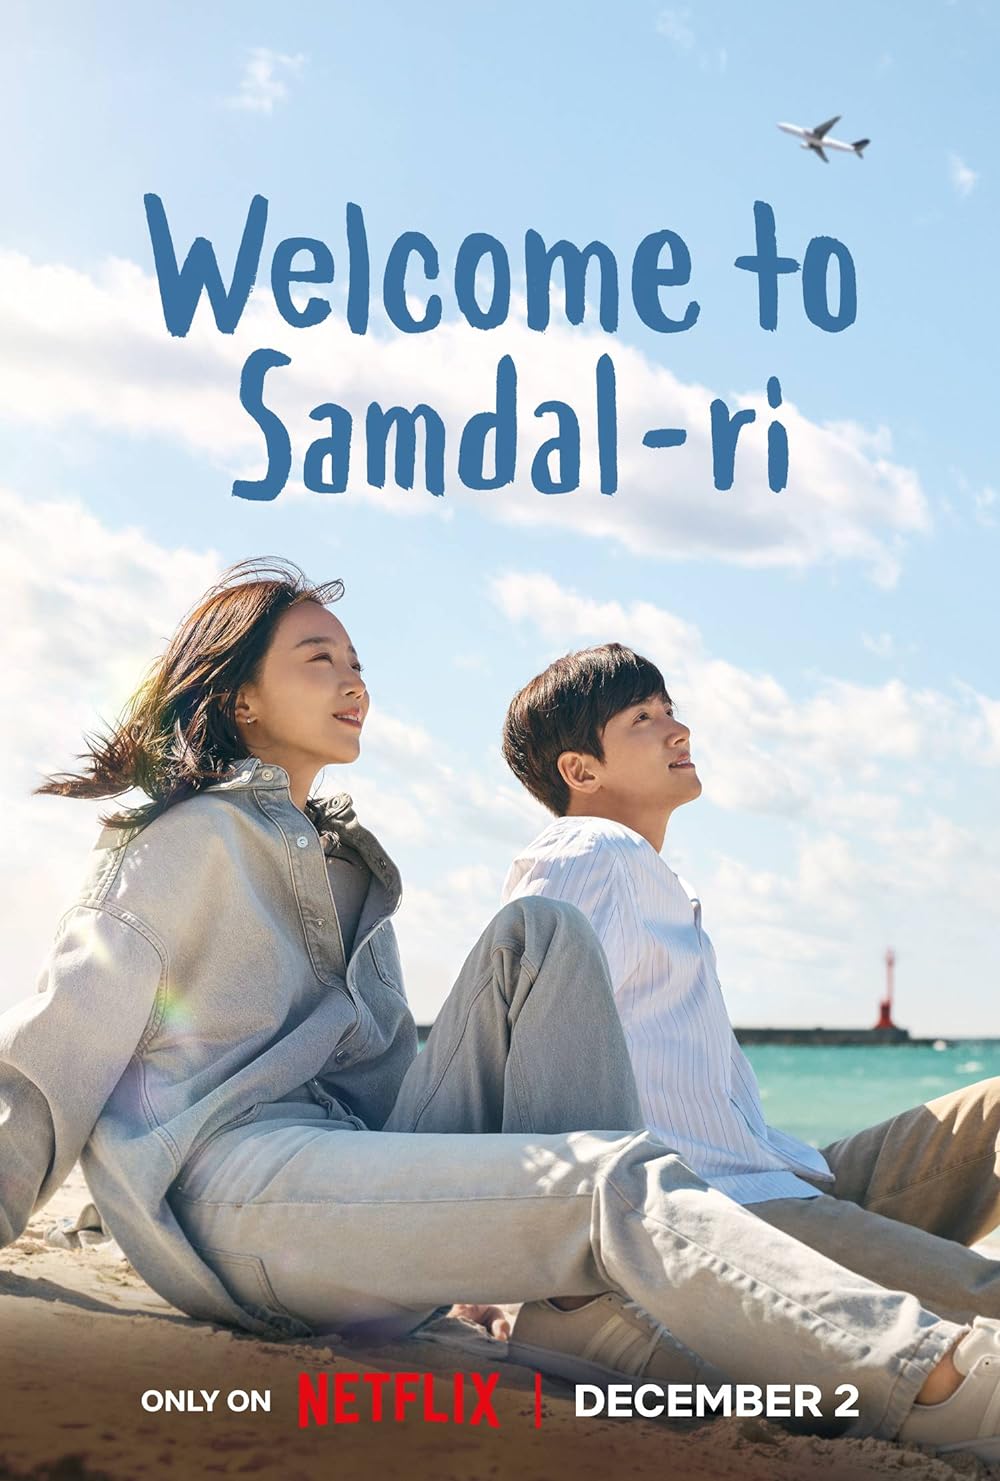 ดูหนังออนไลน์ฟรี ซีรี่ส์เกาหลี Welcome to Samdalri (2023) สู่อ้อมกอดซัมดัลลี ซับไทย